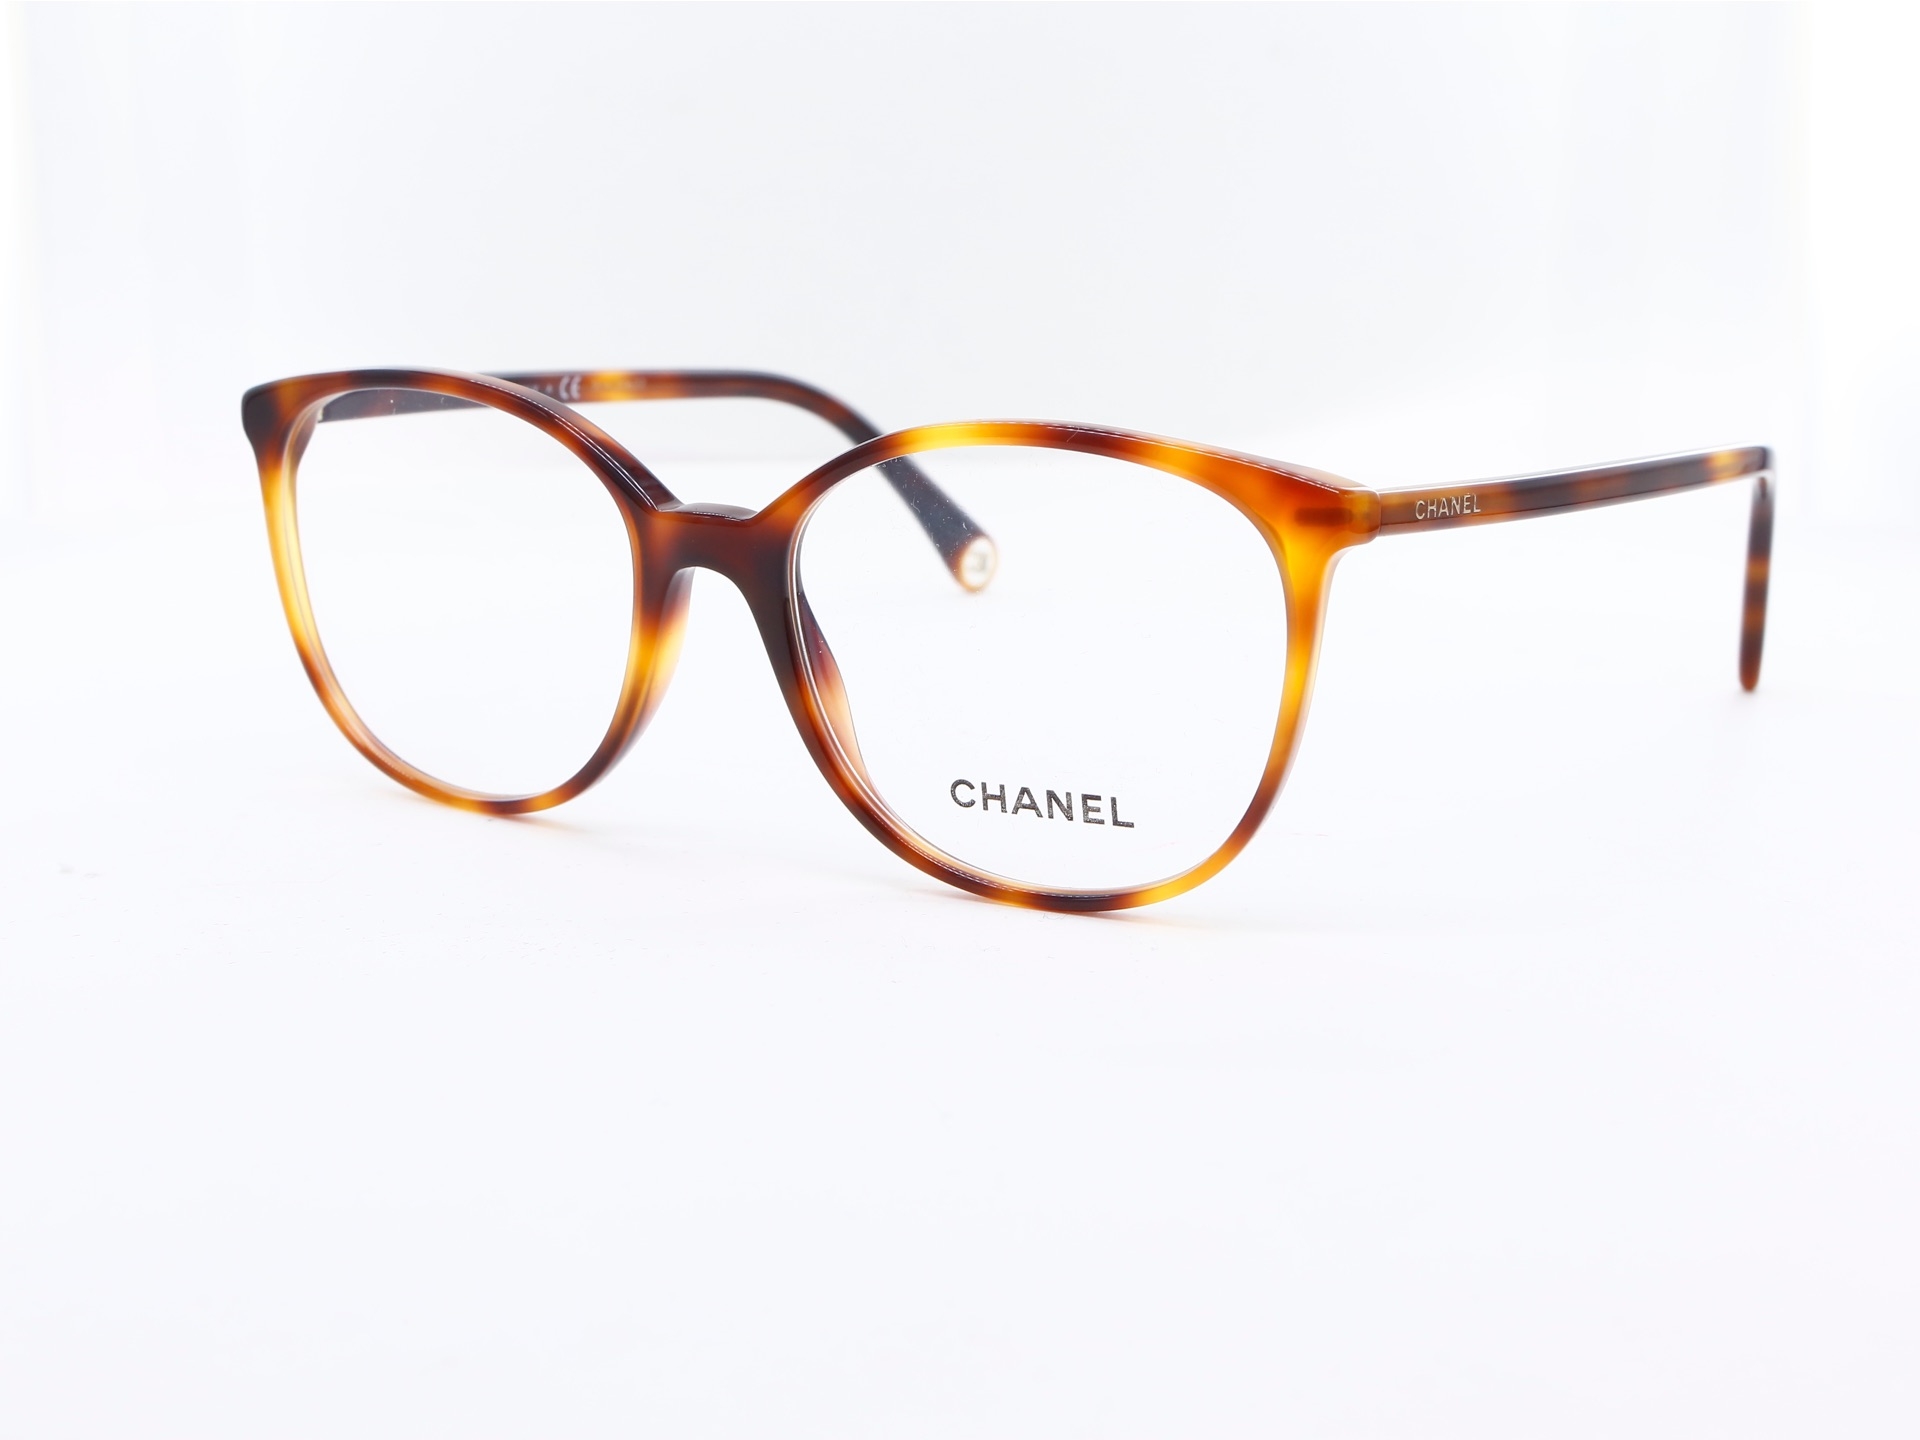 Chanel - ref: 87361